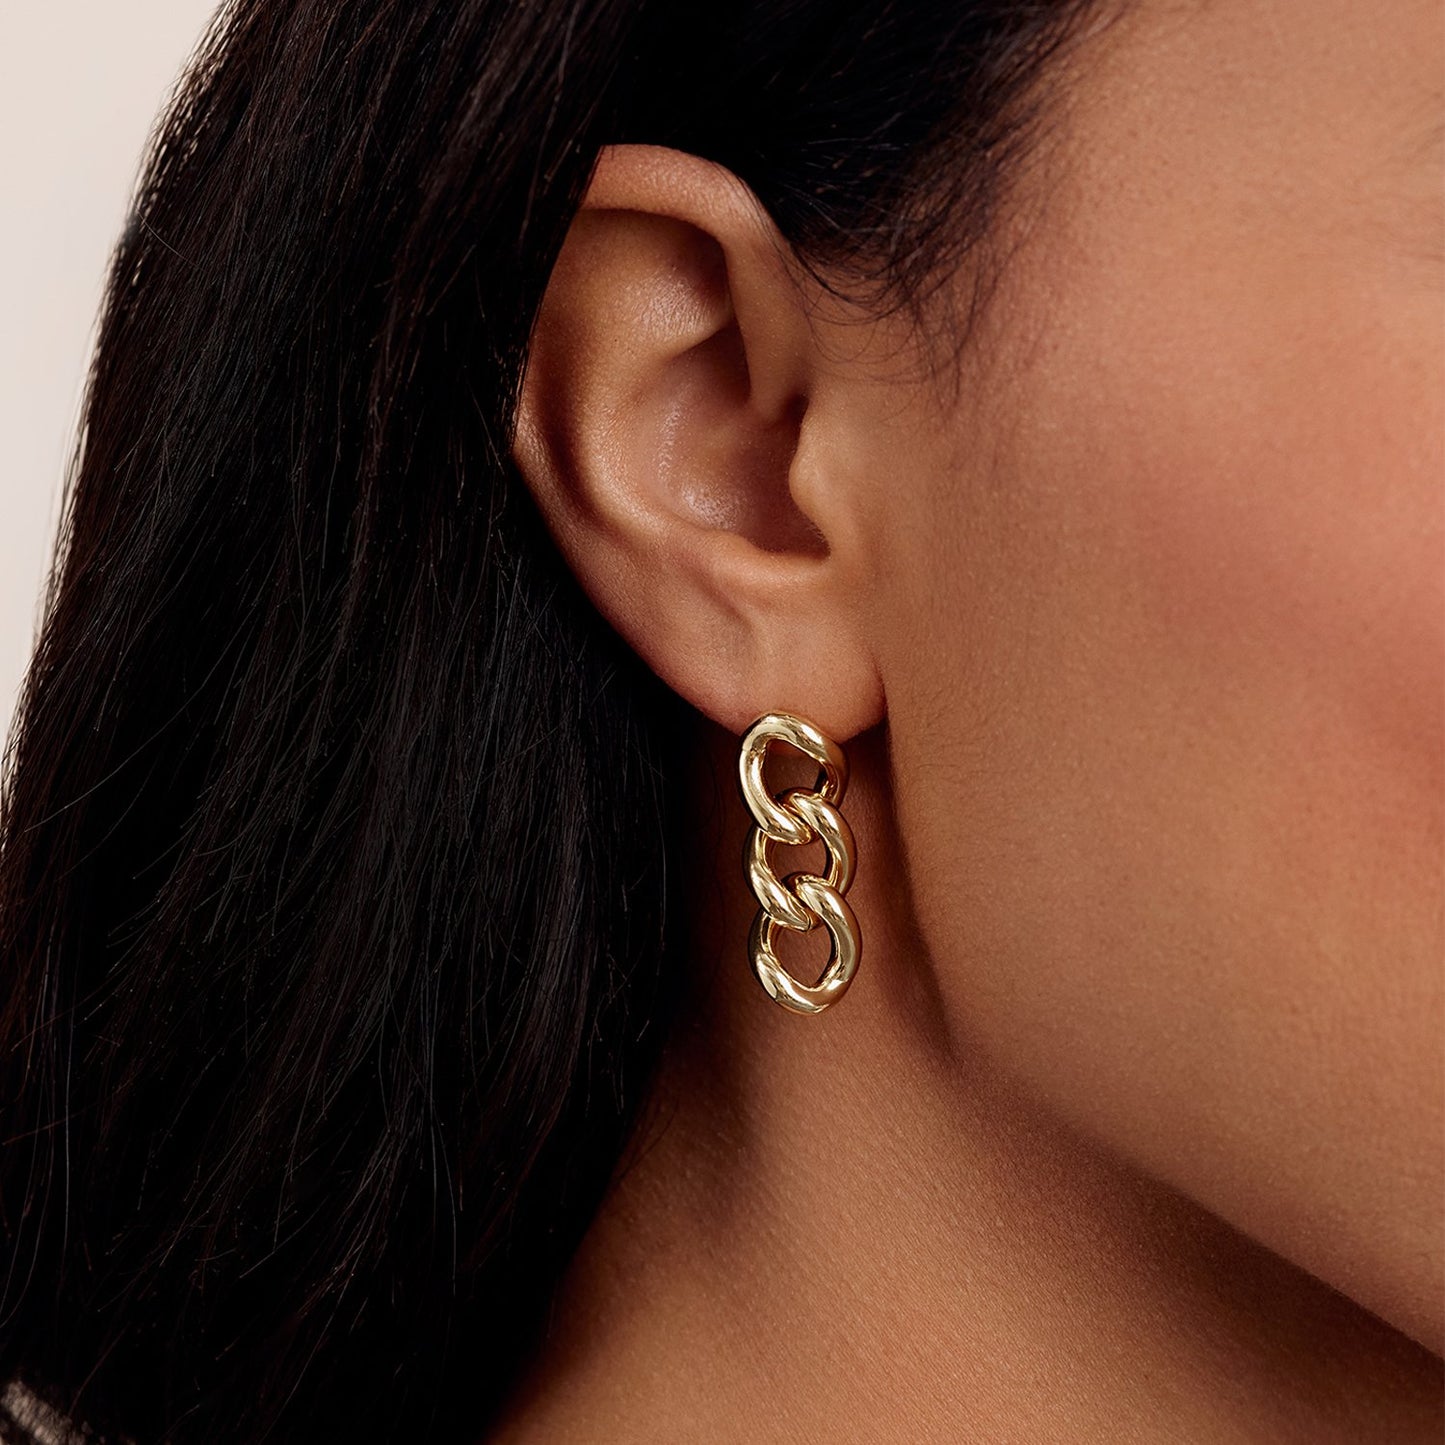 Tatum Earrings in Gold Plated, Women's by Gorjana